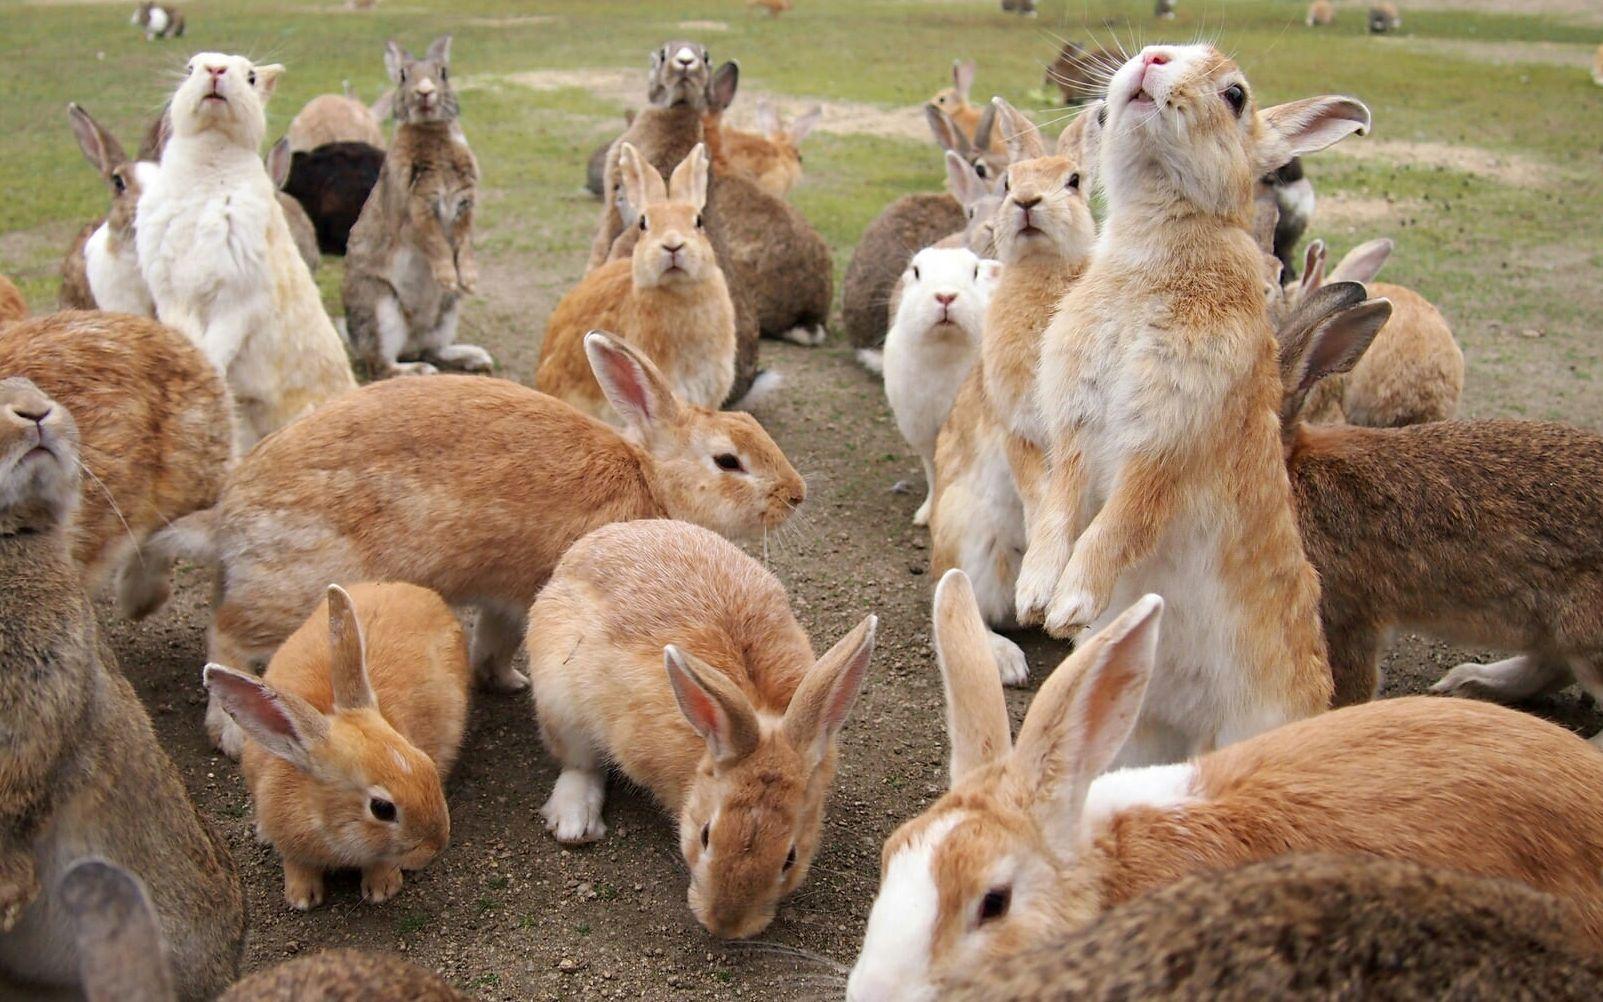 在兔窝的兔子 库存照片. 图片 包括有 宠物, 开掘, 土壤, 工厂, 野兔, 野生生物, 兔宝宝, 啮齿目动物 - 115679888